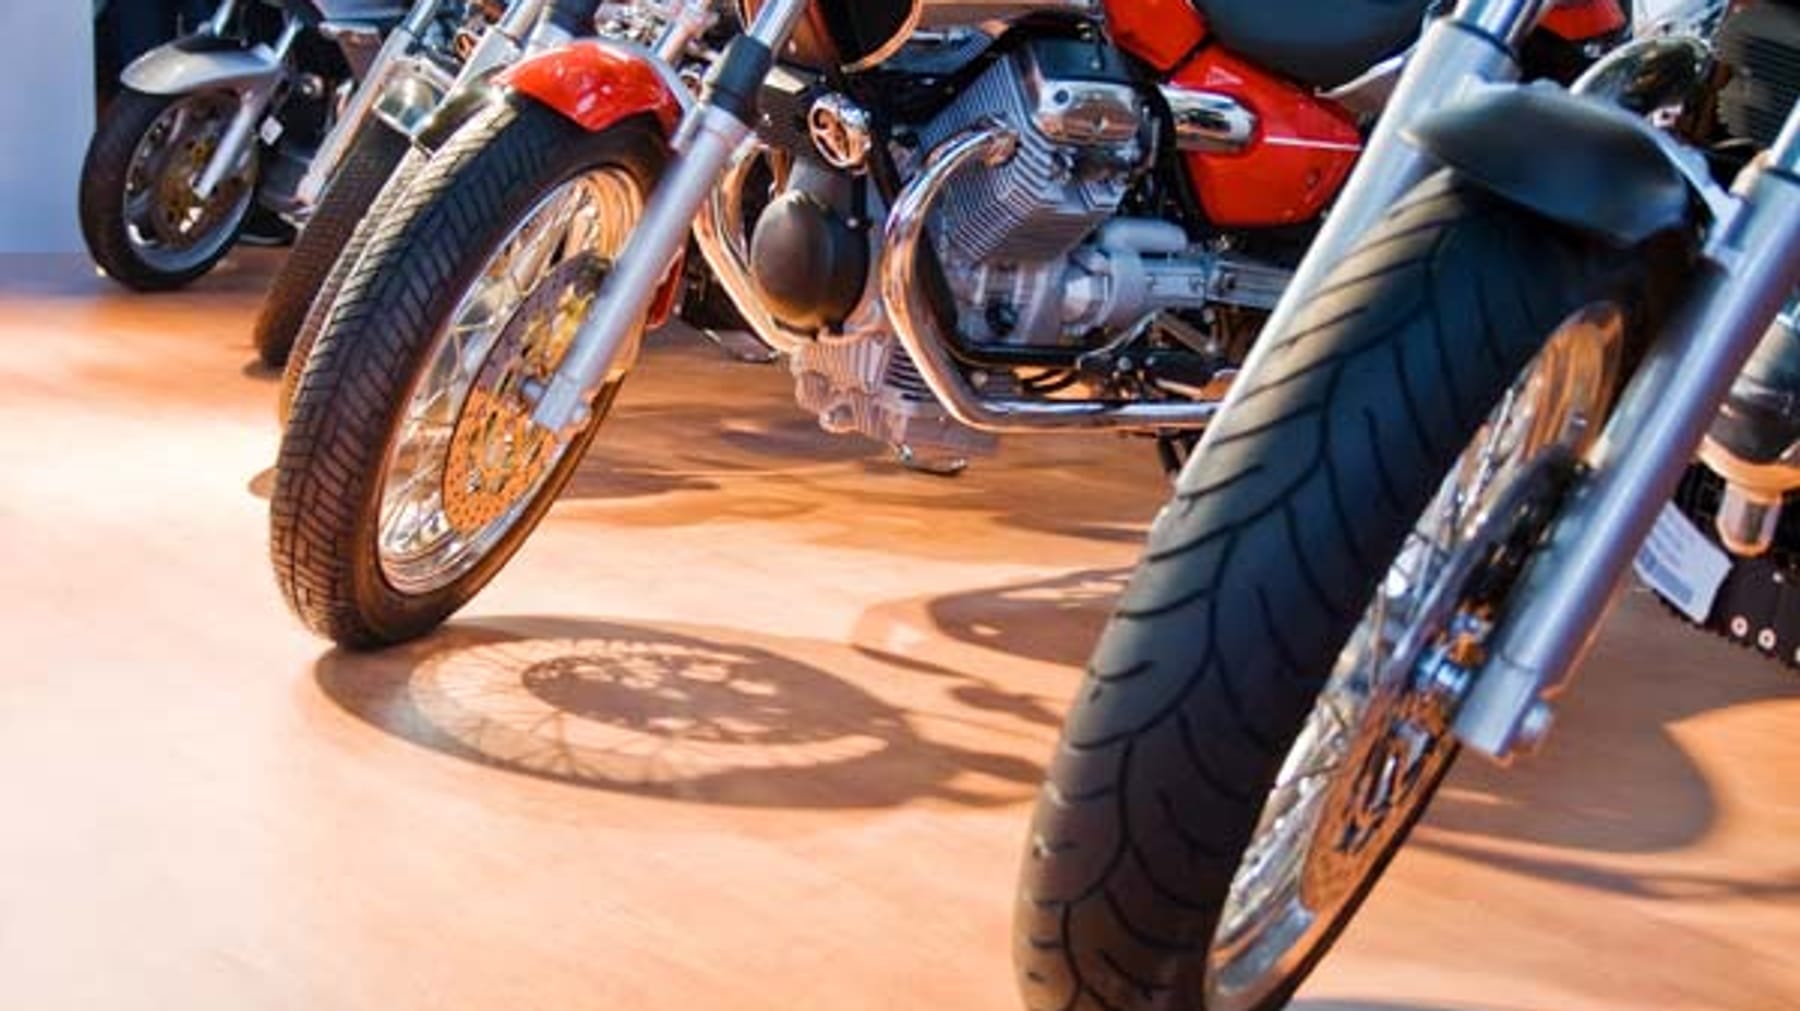 Ratgeber: Lebensgefahr durch alte geklebte Bremsbeläge am Motorrad